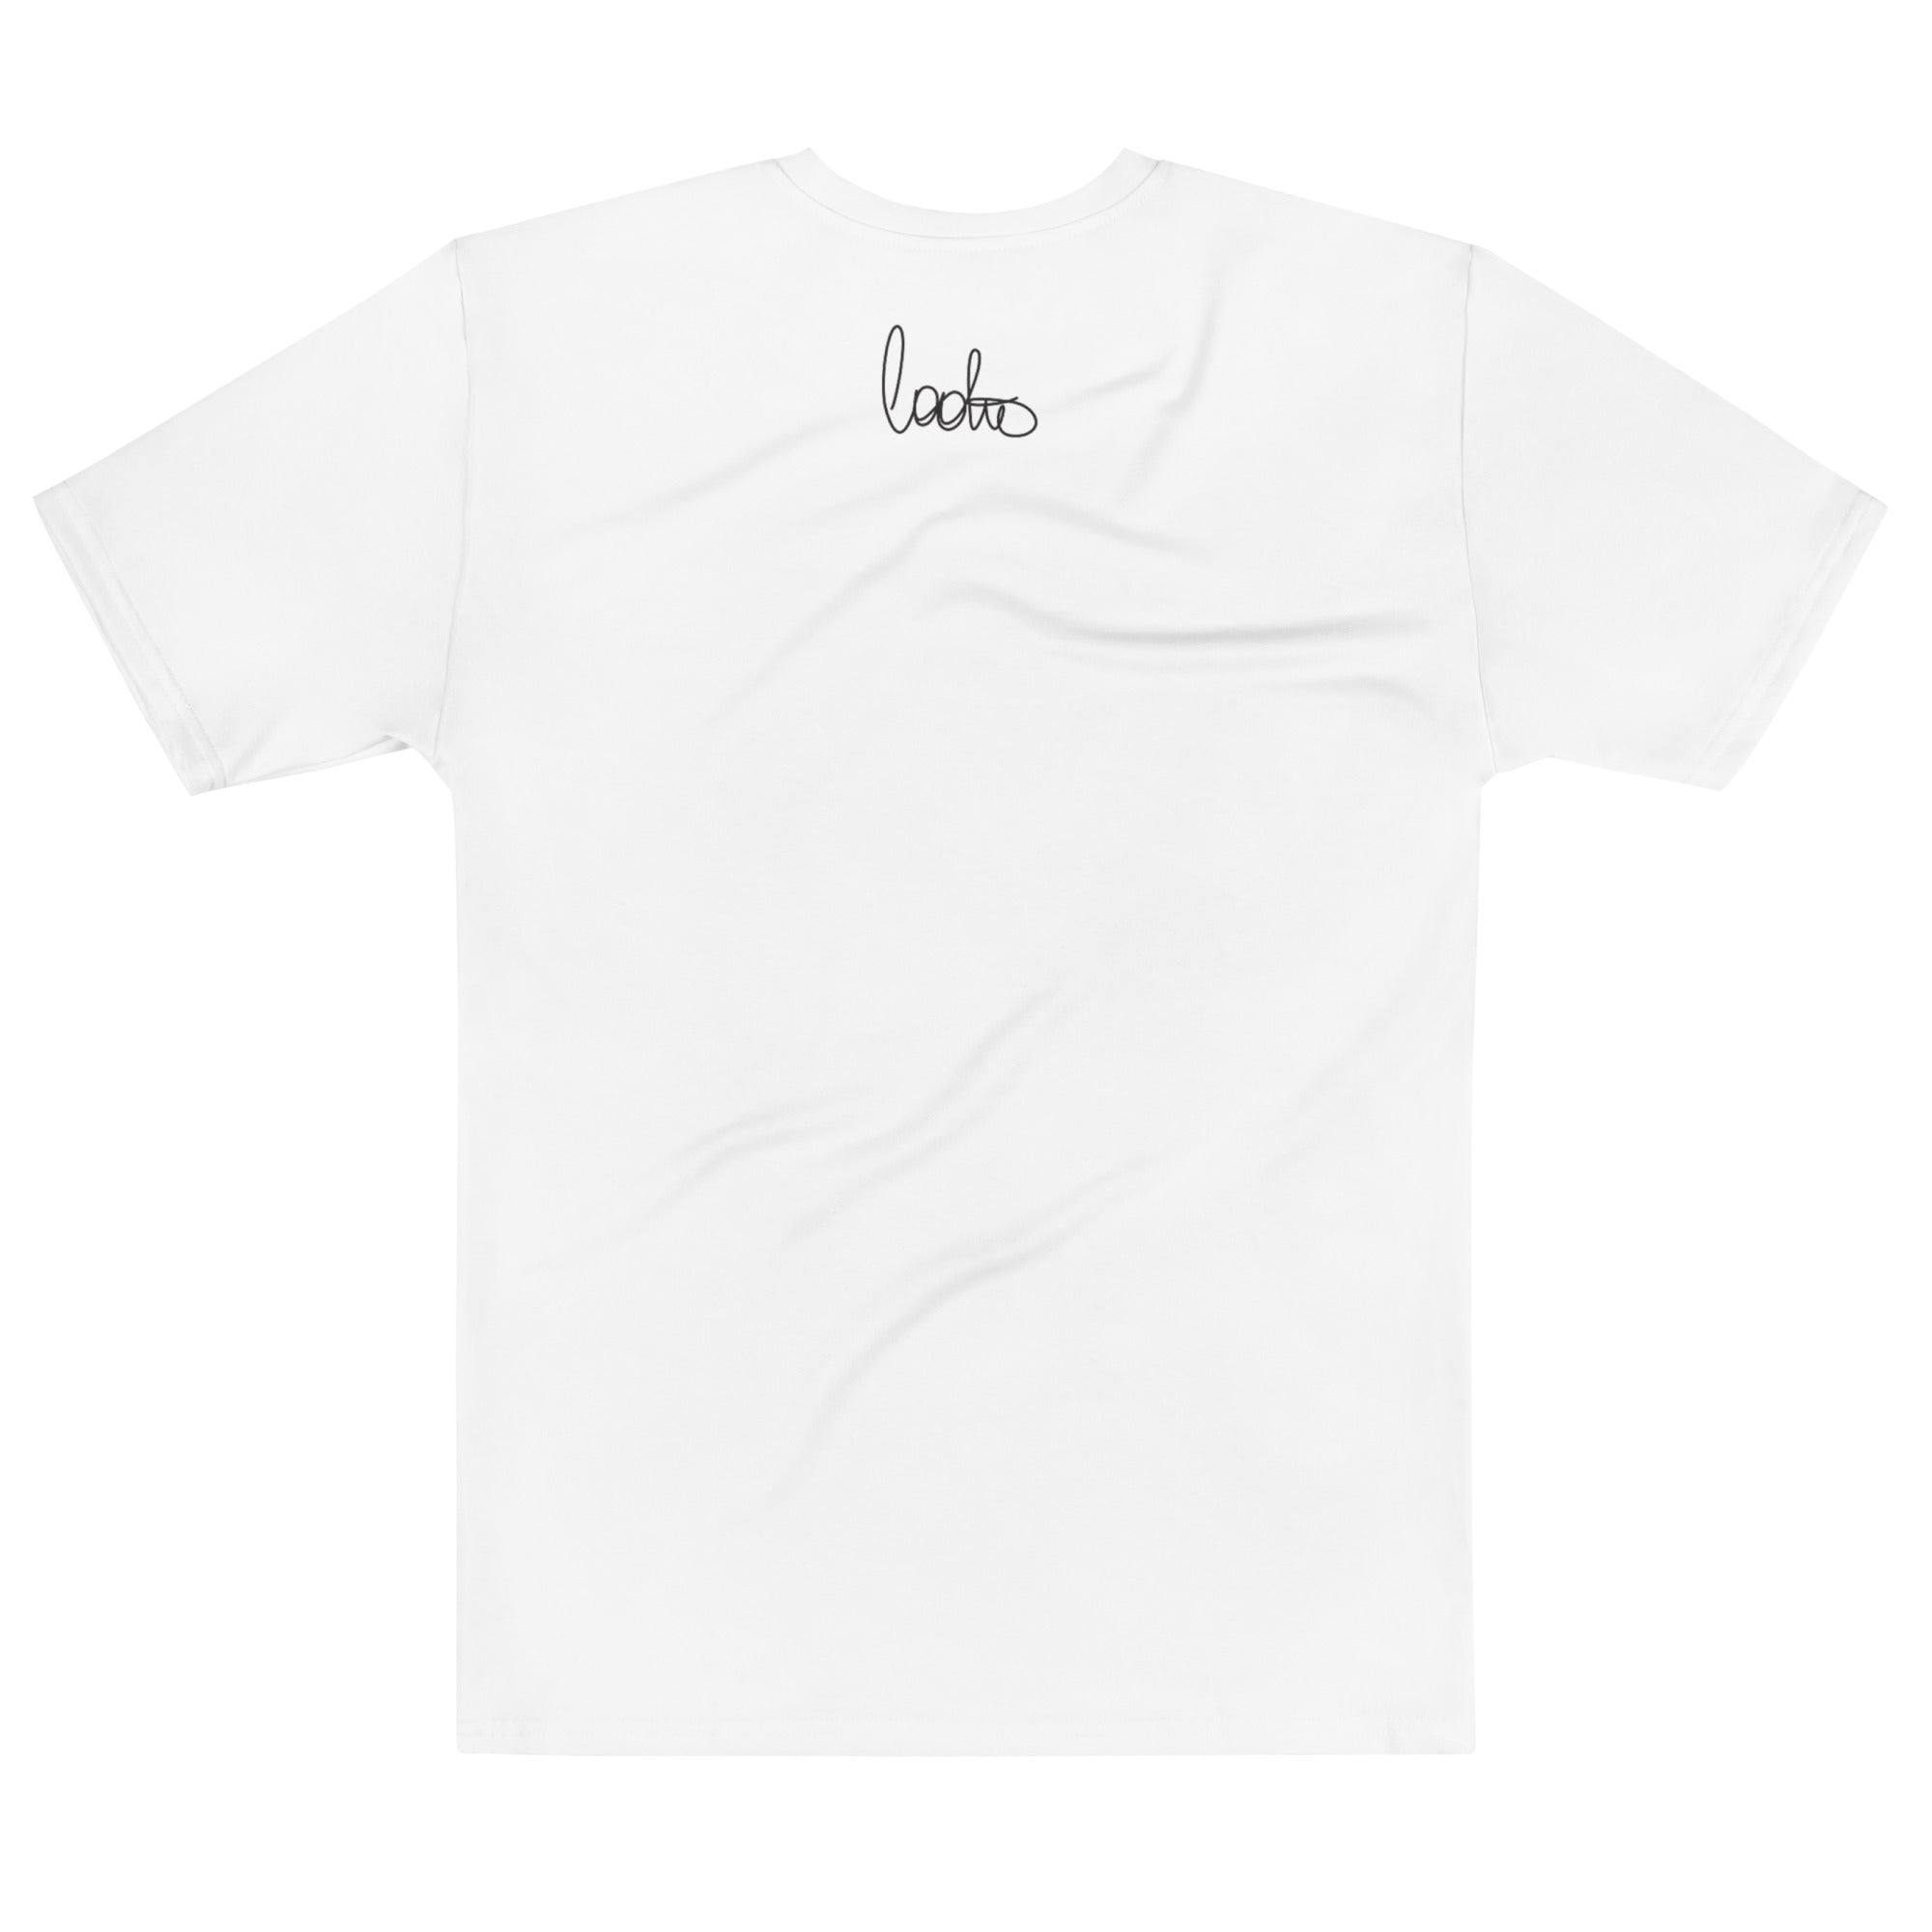 COOLIO - Men's t-shirt